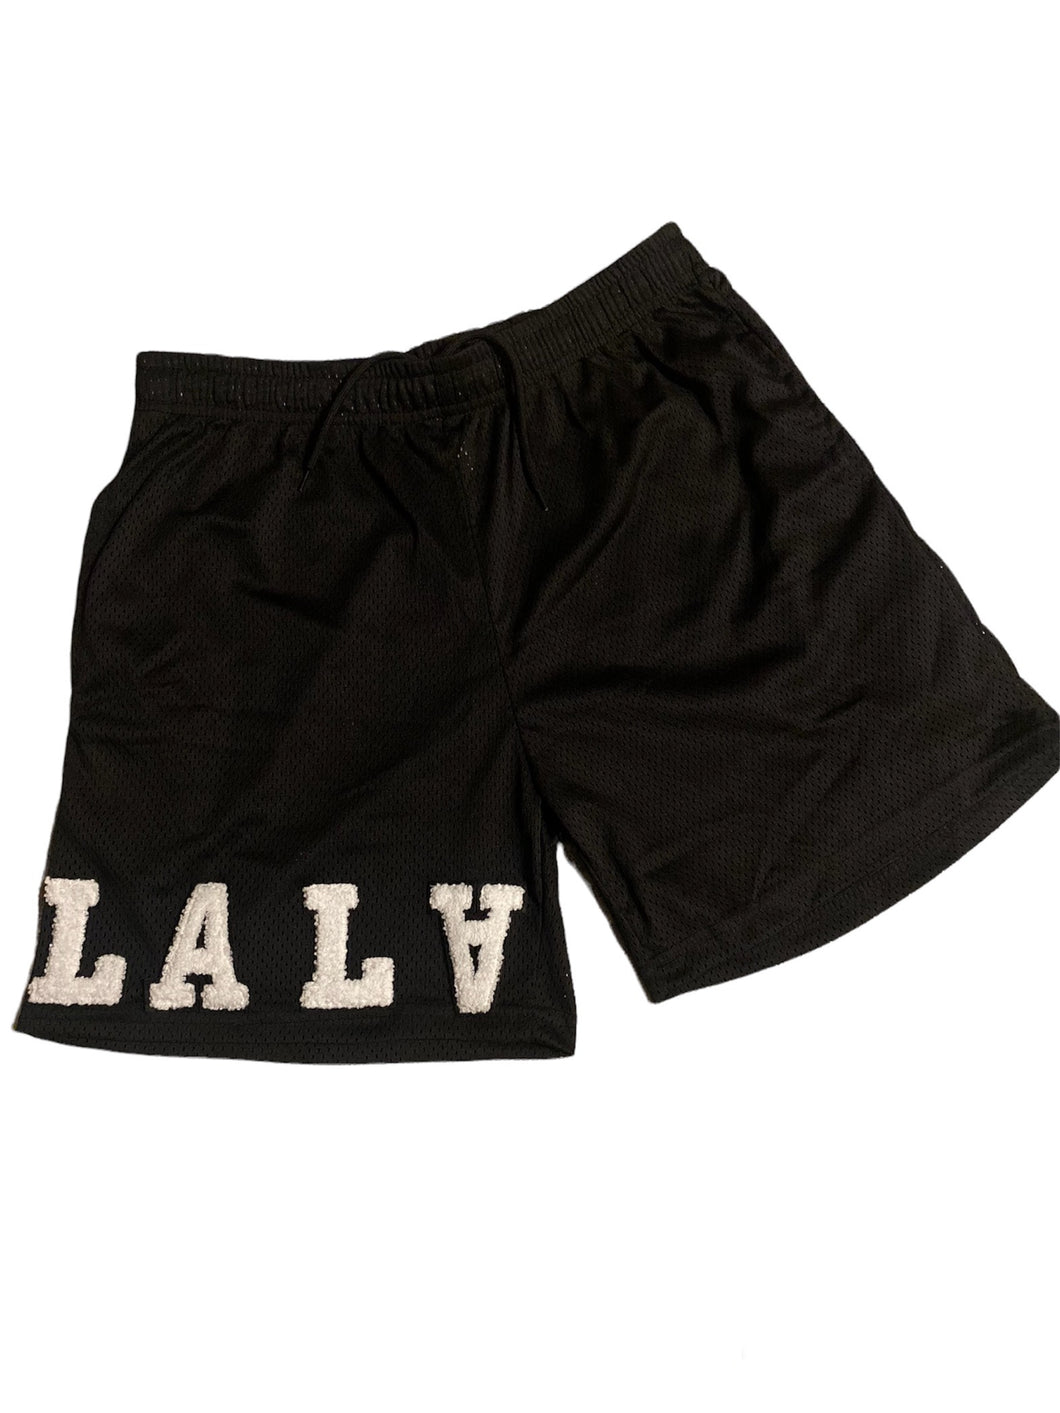 Black “LA” Mesh Shorts